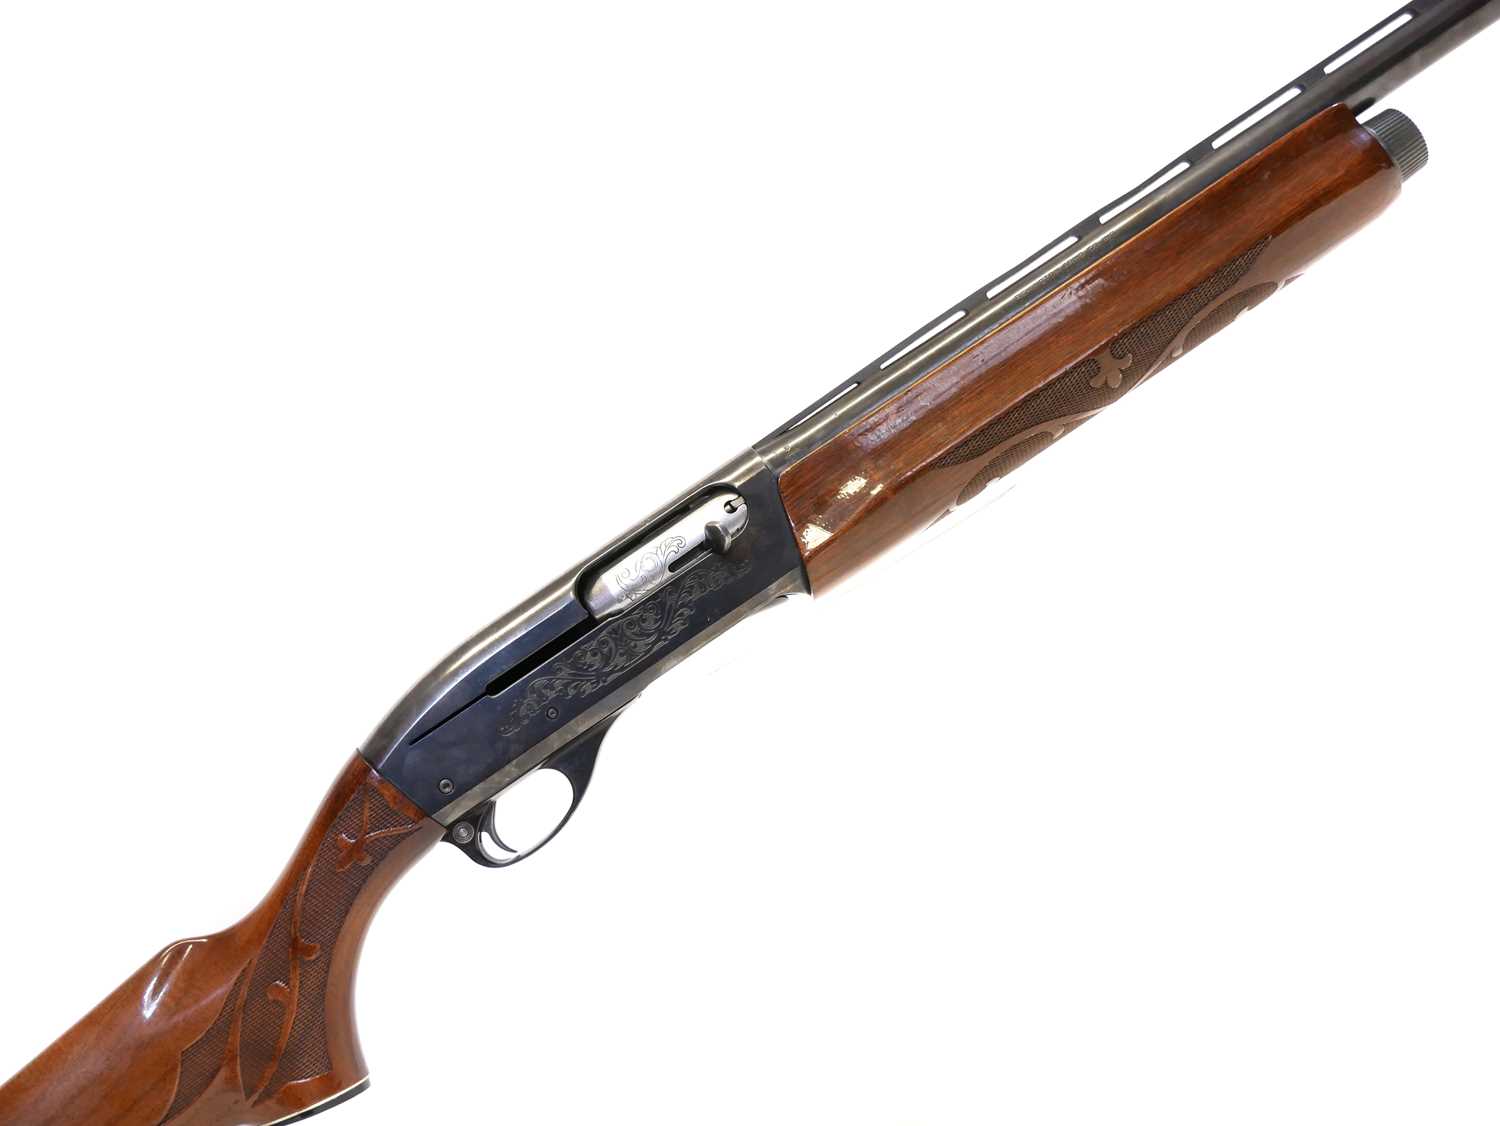 Lot 445 - Remington 12 bore semi automatic shotgun LICENCE REQUIRED